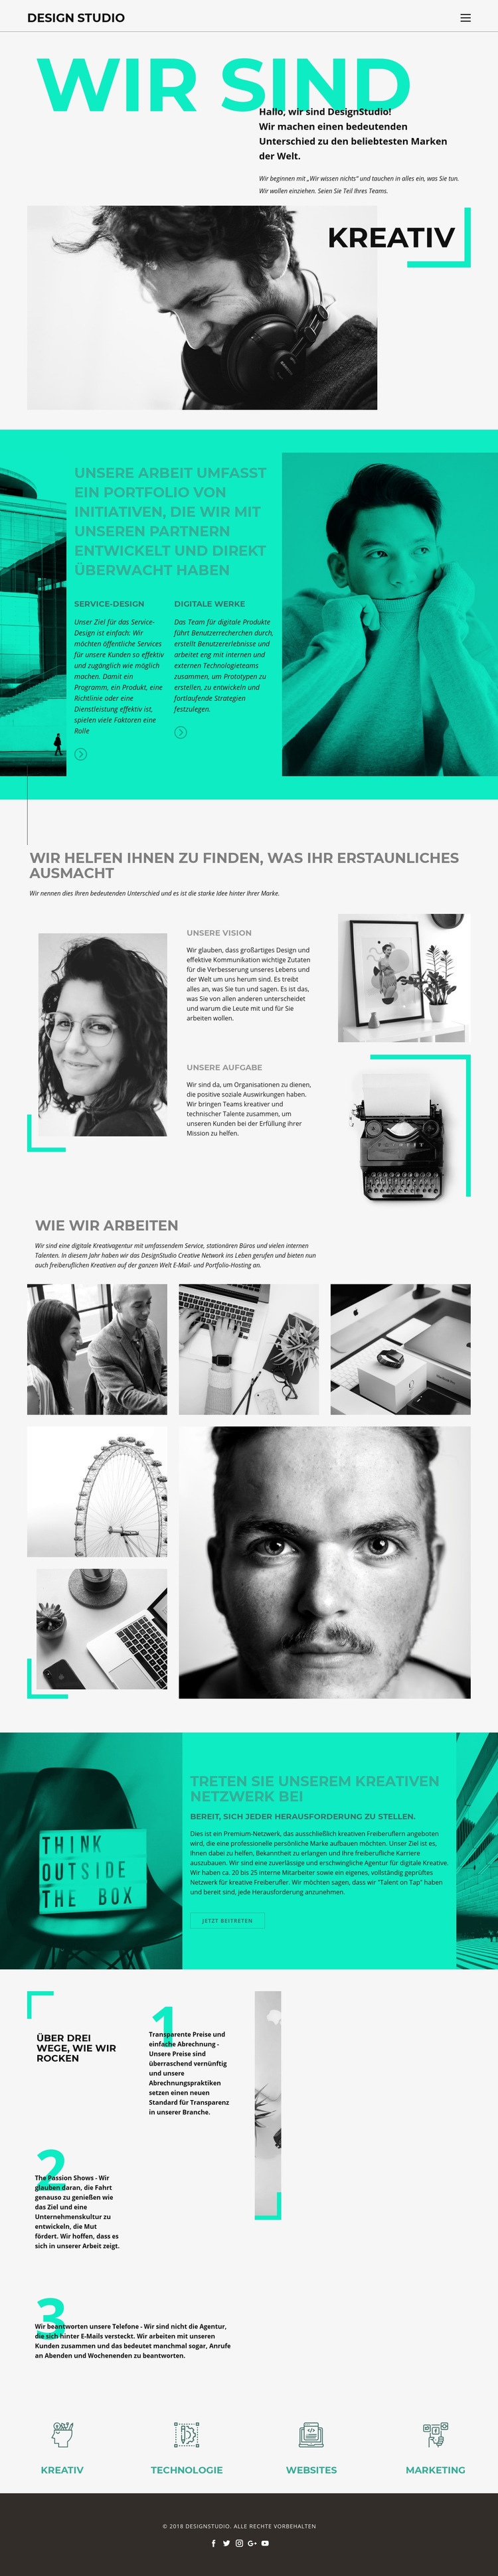 Wir sind ein kreatives Geschäft Website design